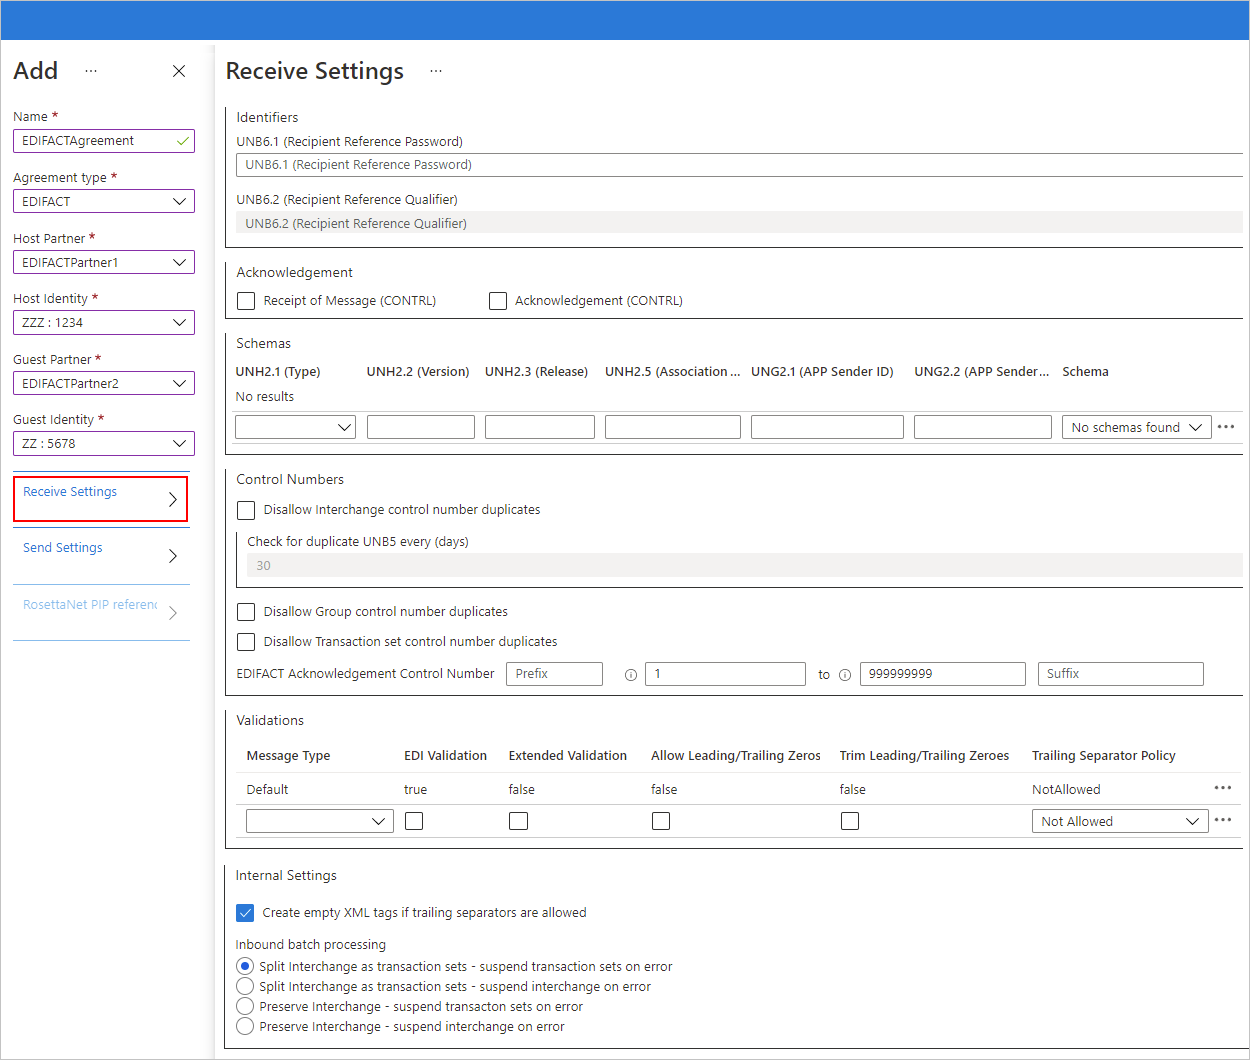 Captura de pantalla que muestra la configuración del contrato de Azure Portal y EDIFACT para los mensajes entrantes.